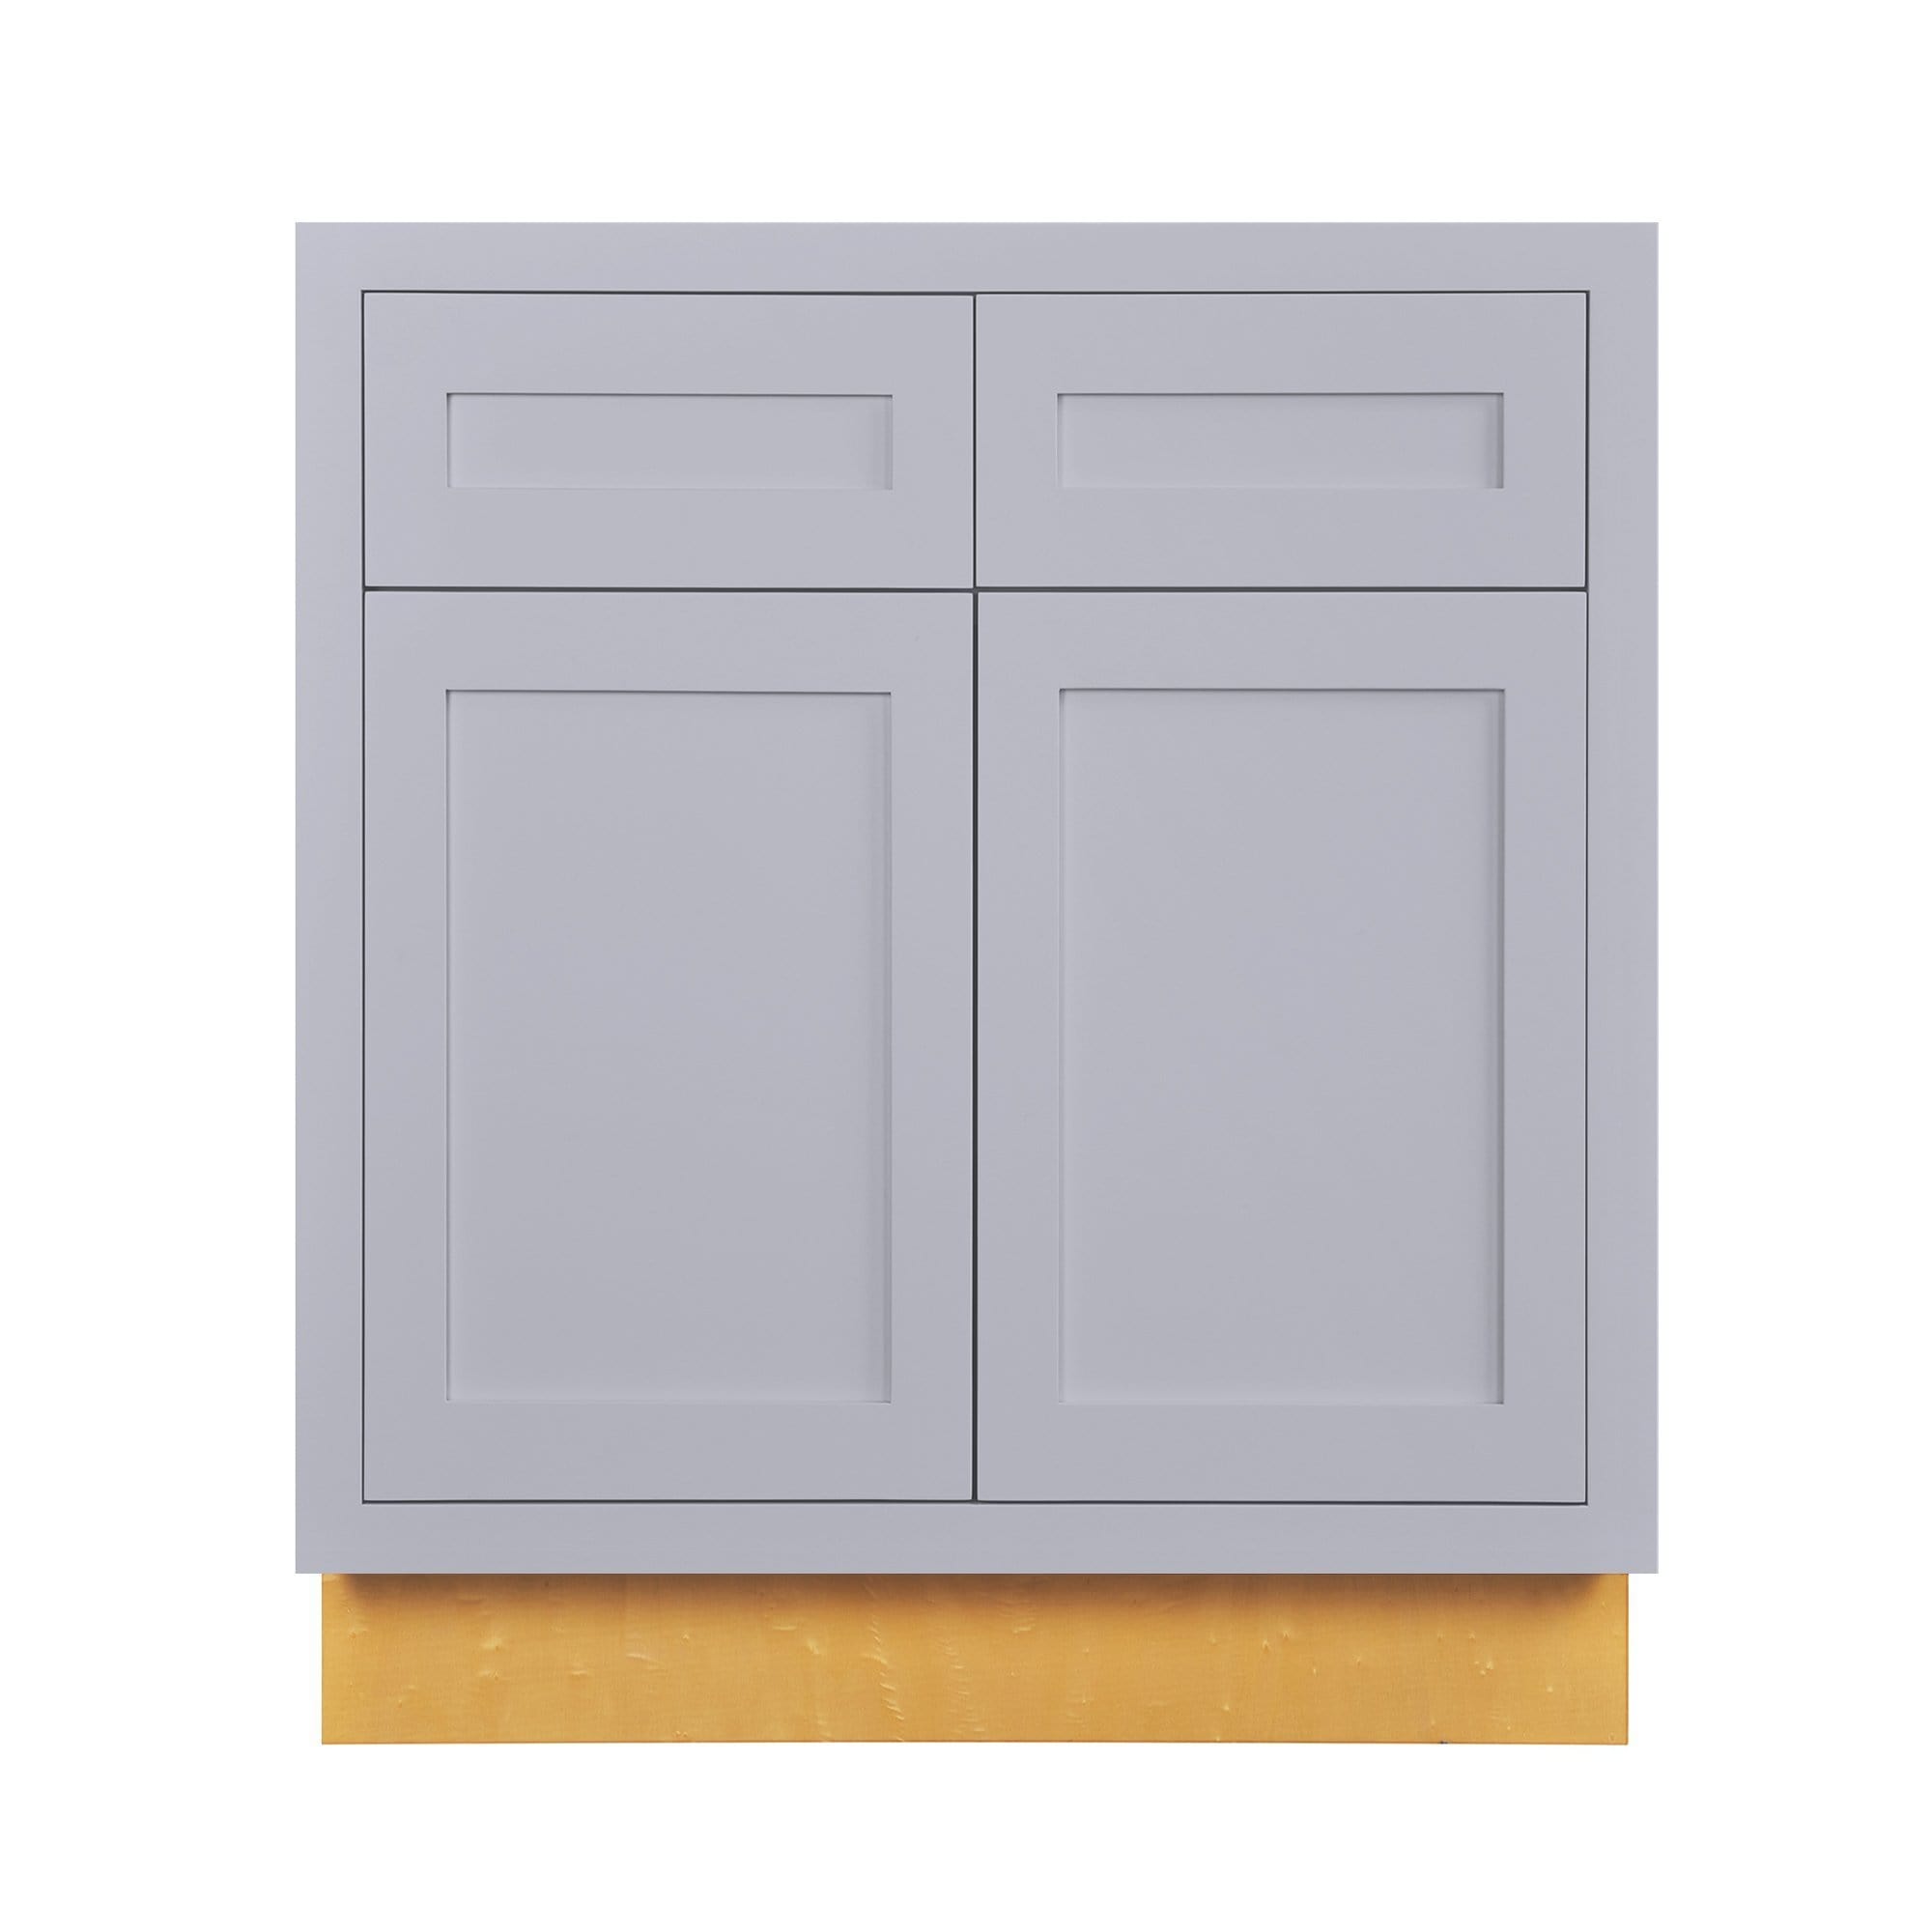 Light Gray Inset Shaker Base Cabinet - Double Door 30"-36" Wide